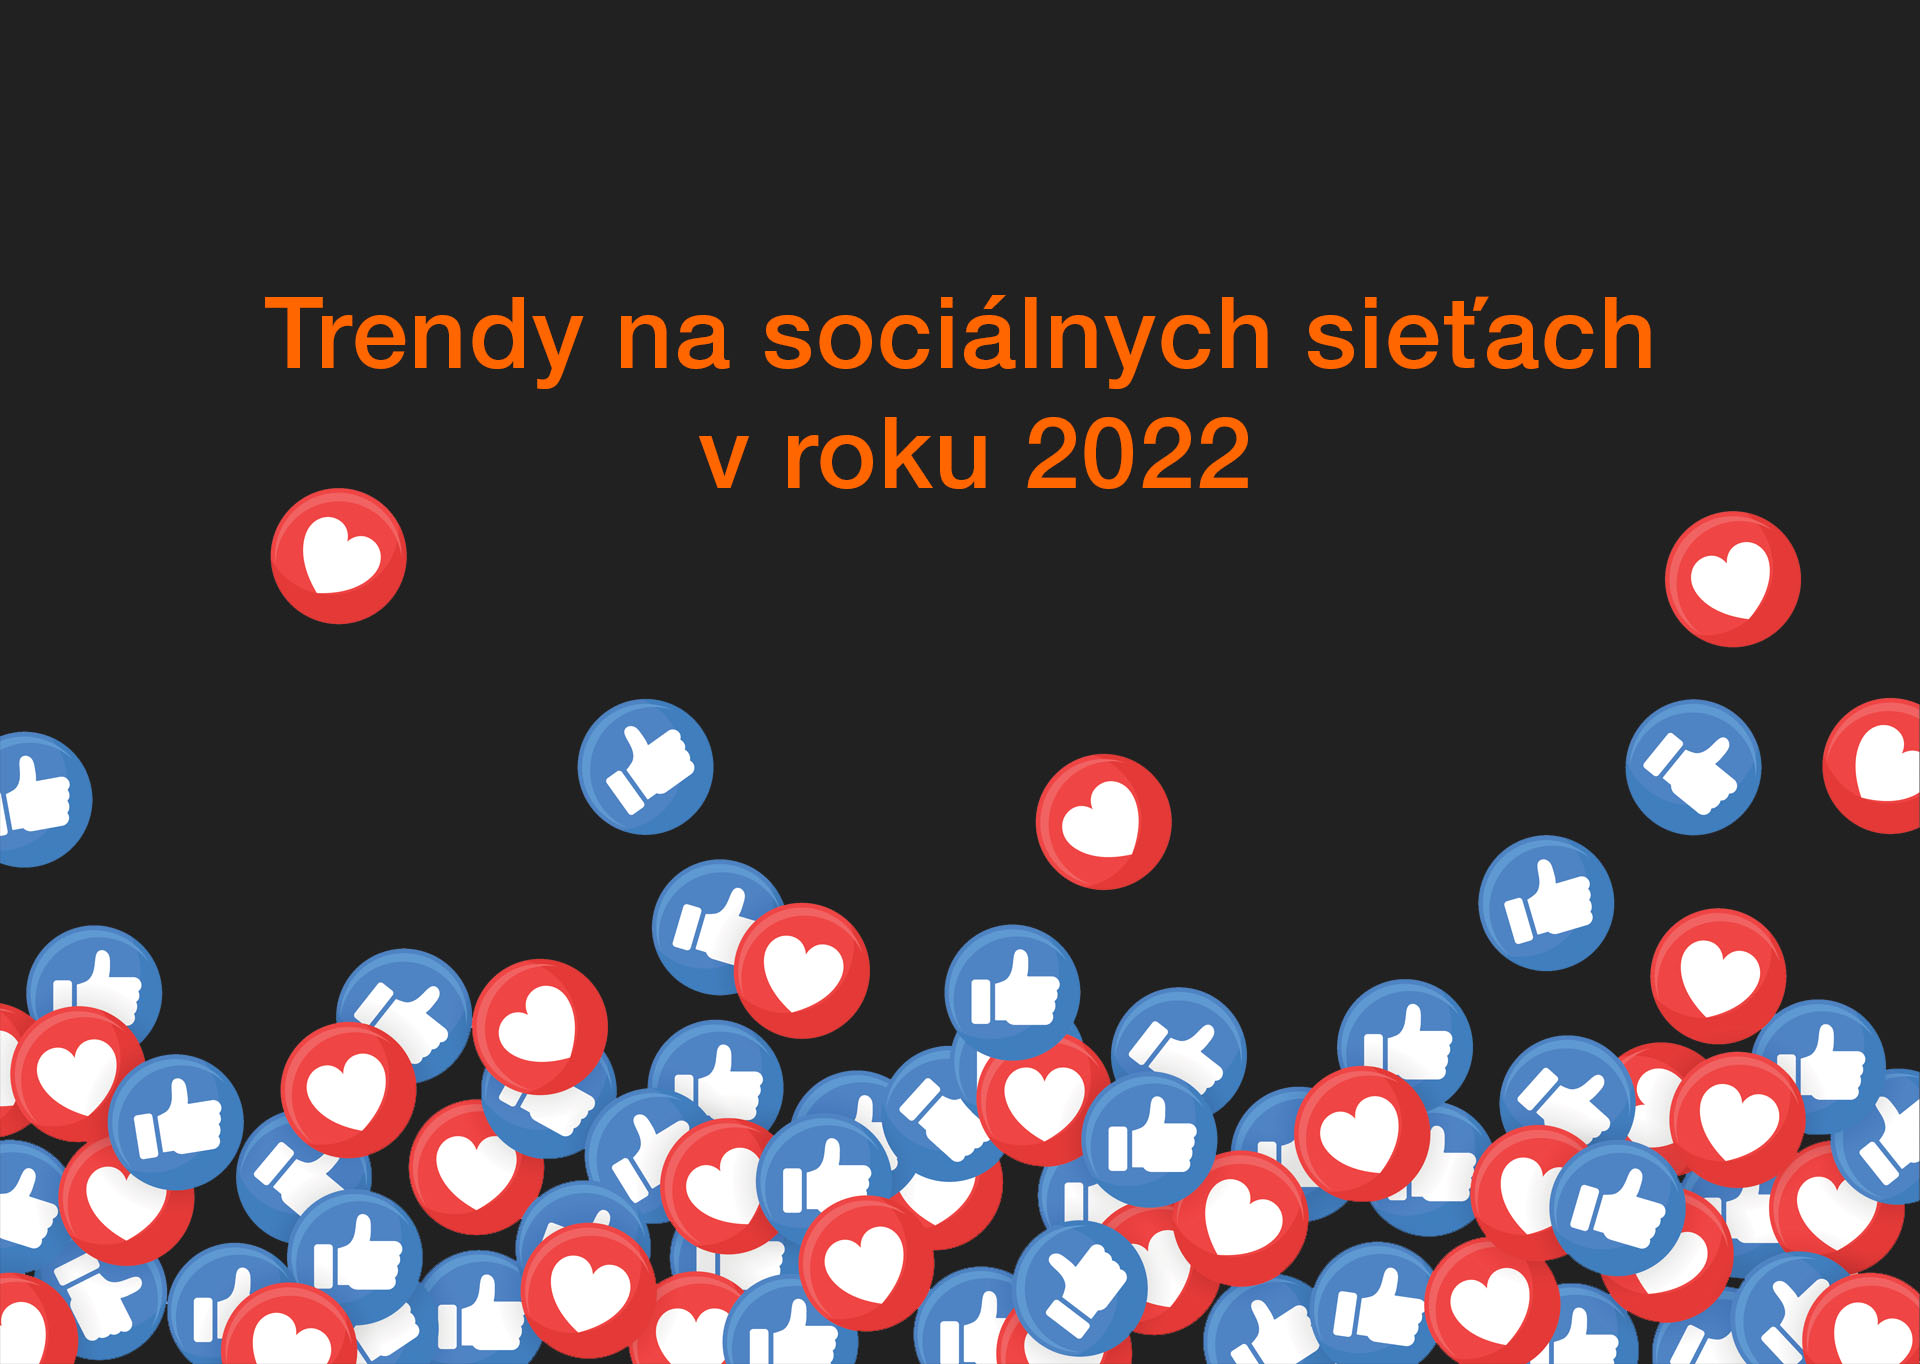 Trendy na sociálnych sieťach v roku 2022